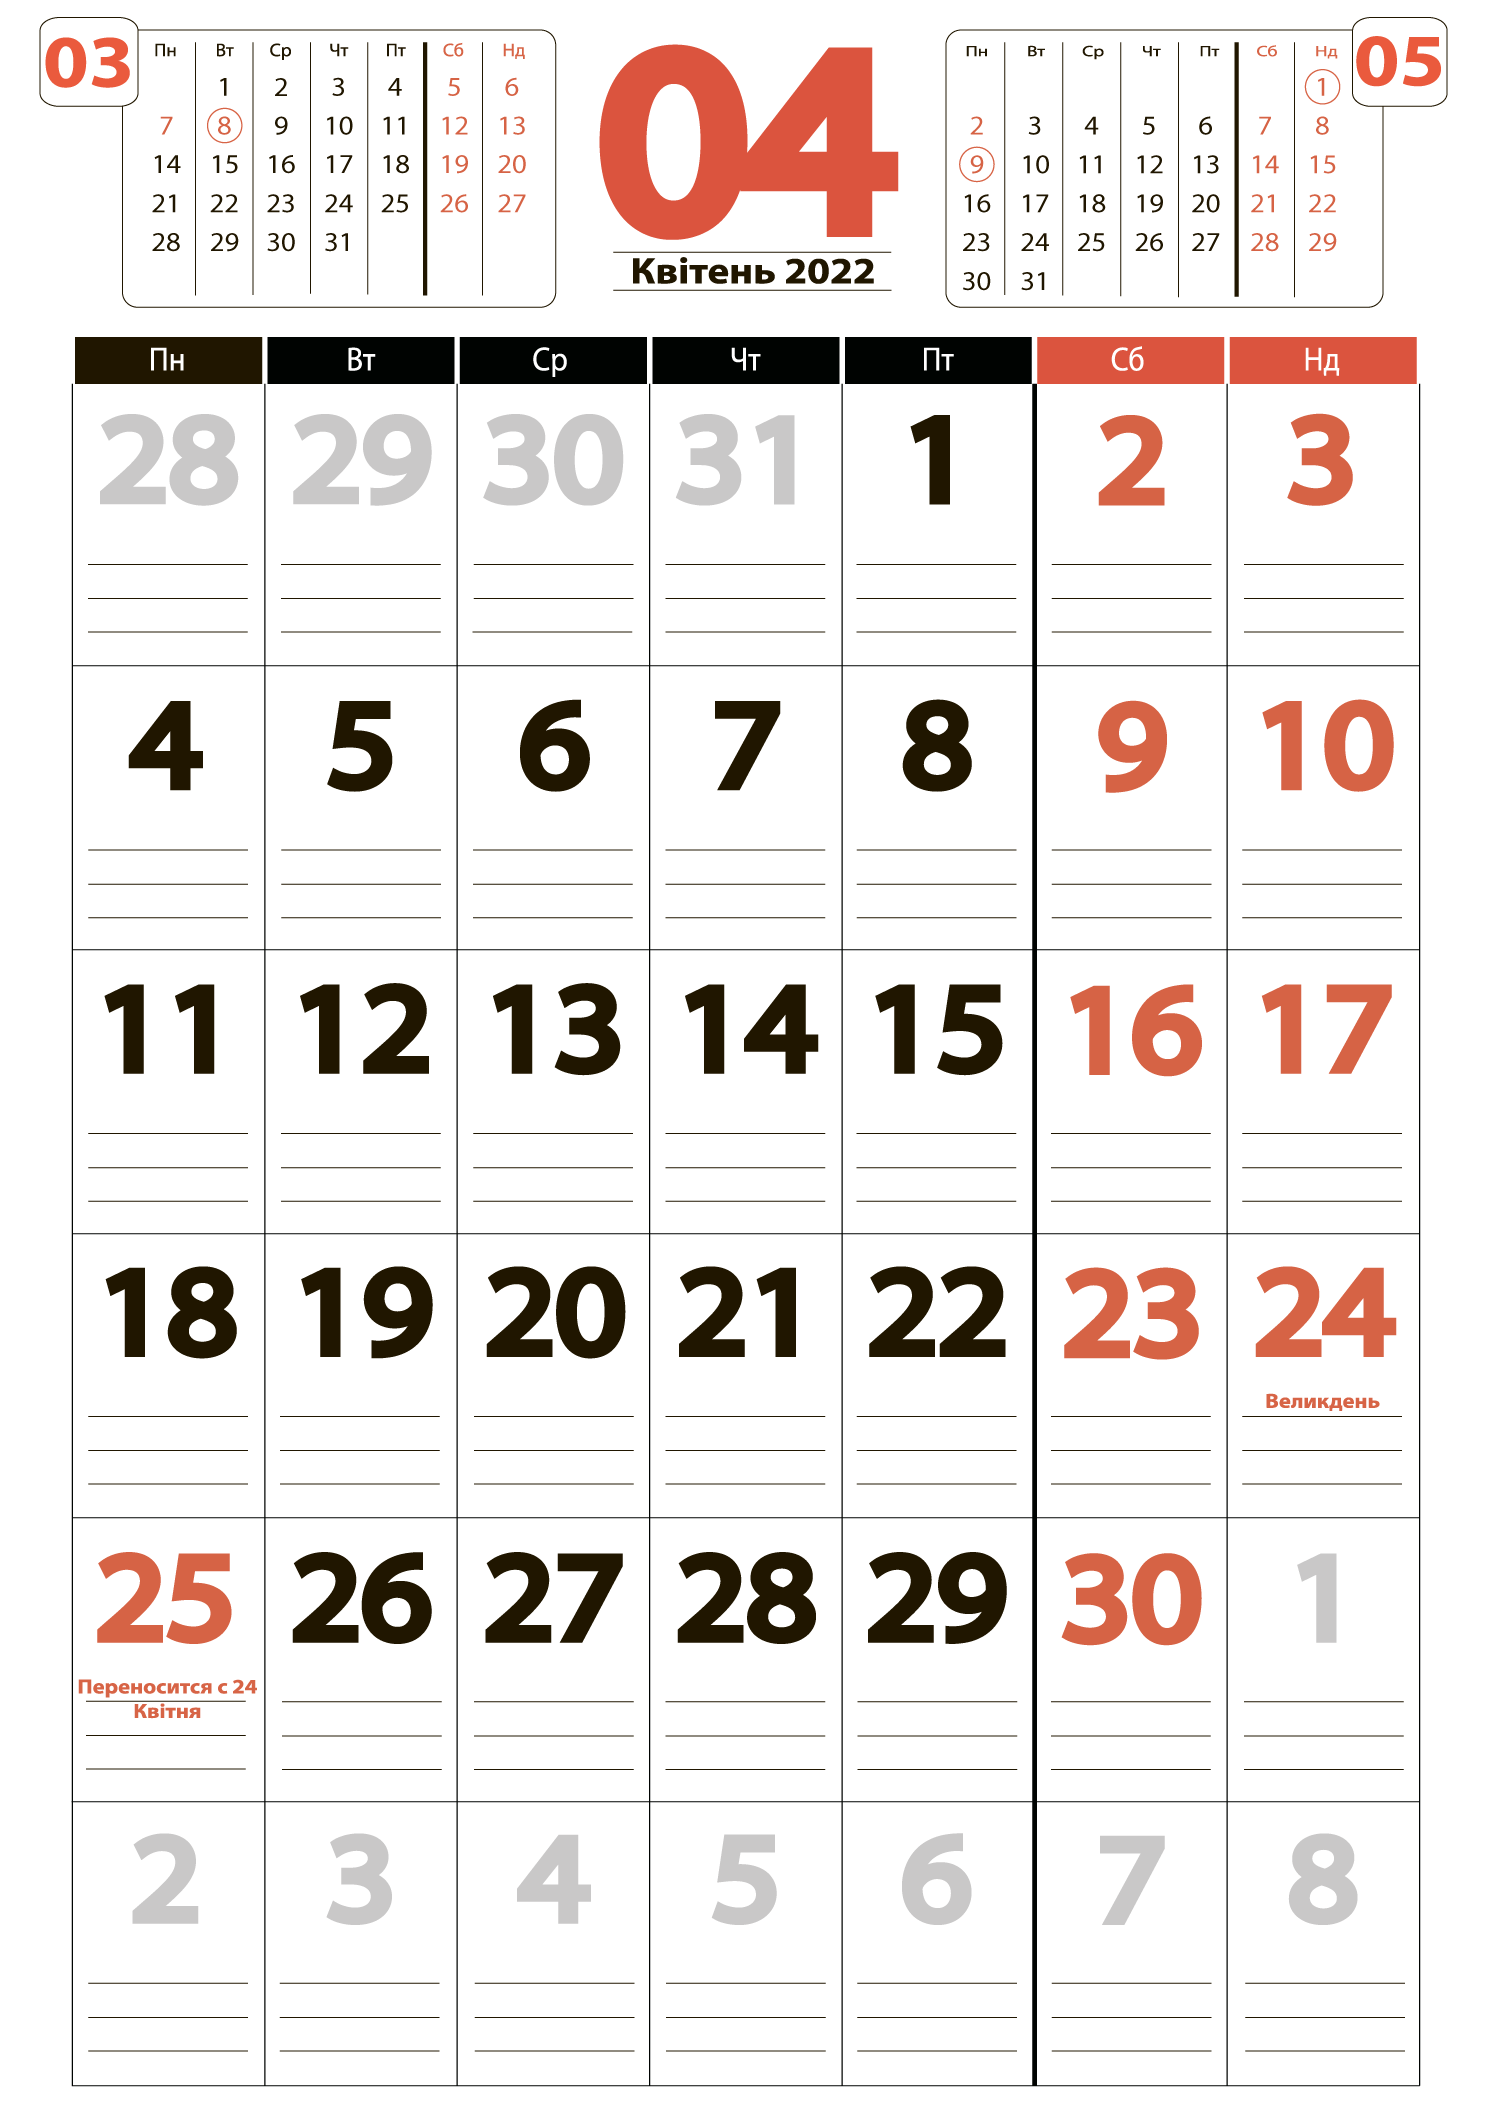 Календар на квітень 2022 (книжковий)